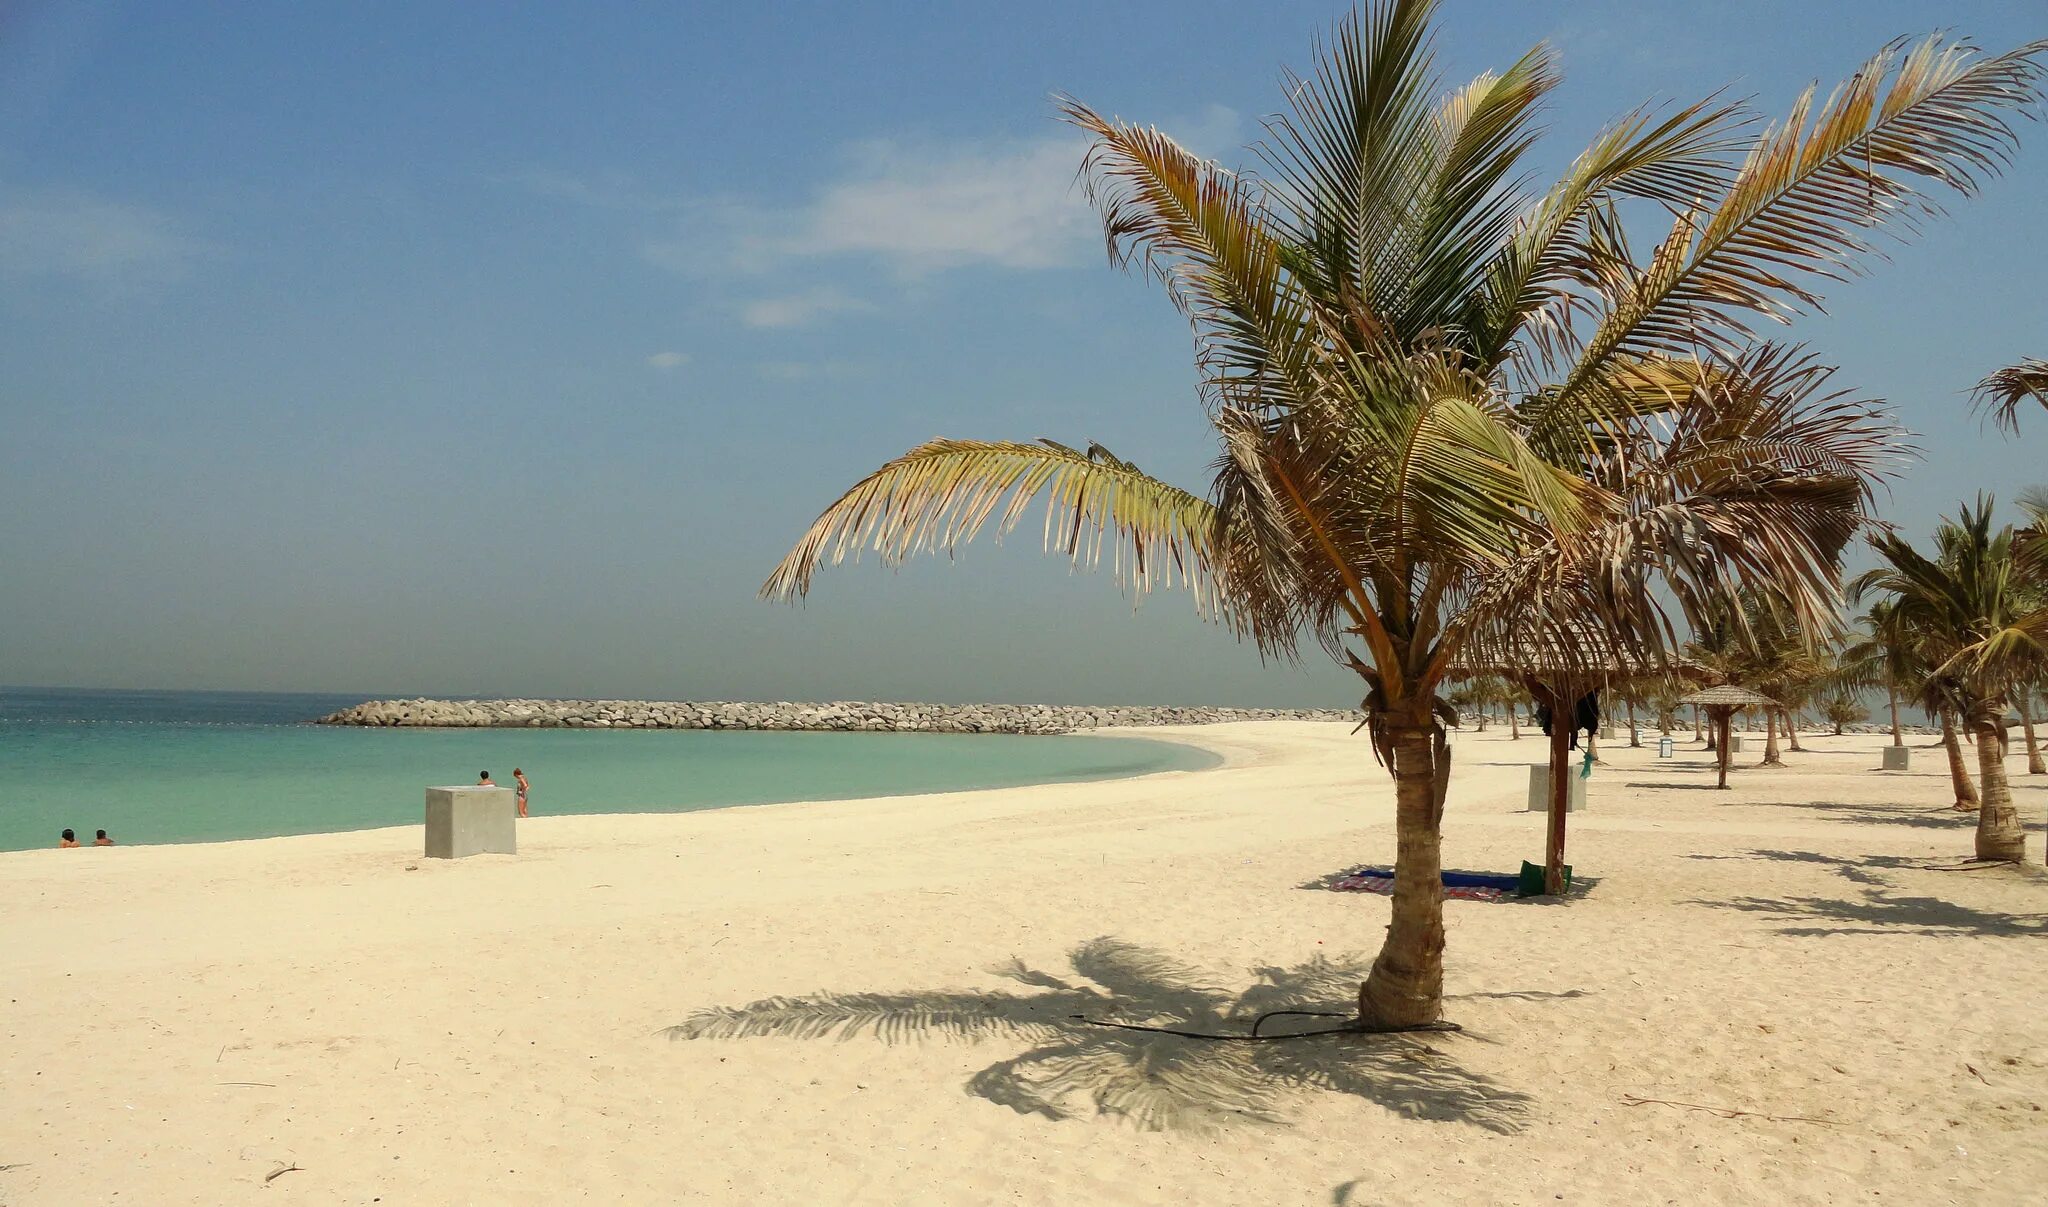 Парк аль мамзар. Мамзар парк Дубай. Пляж Аль Мамзар. Пляжный парк Аль Мамзар в Шардже. Пляж al Mamzar в Дубае.